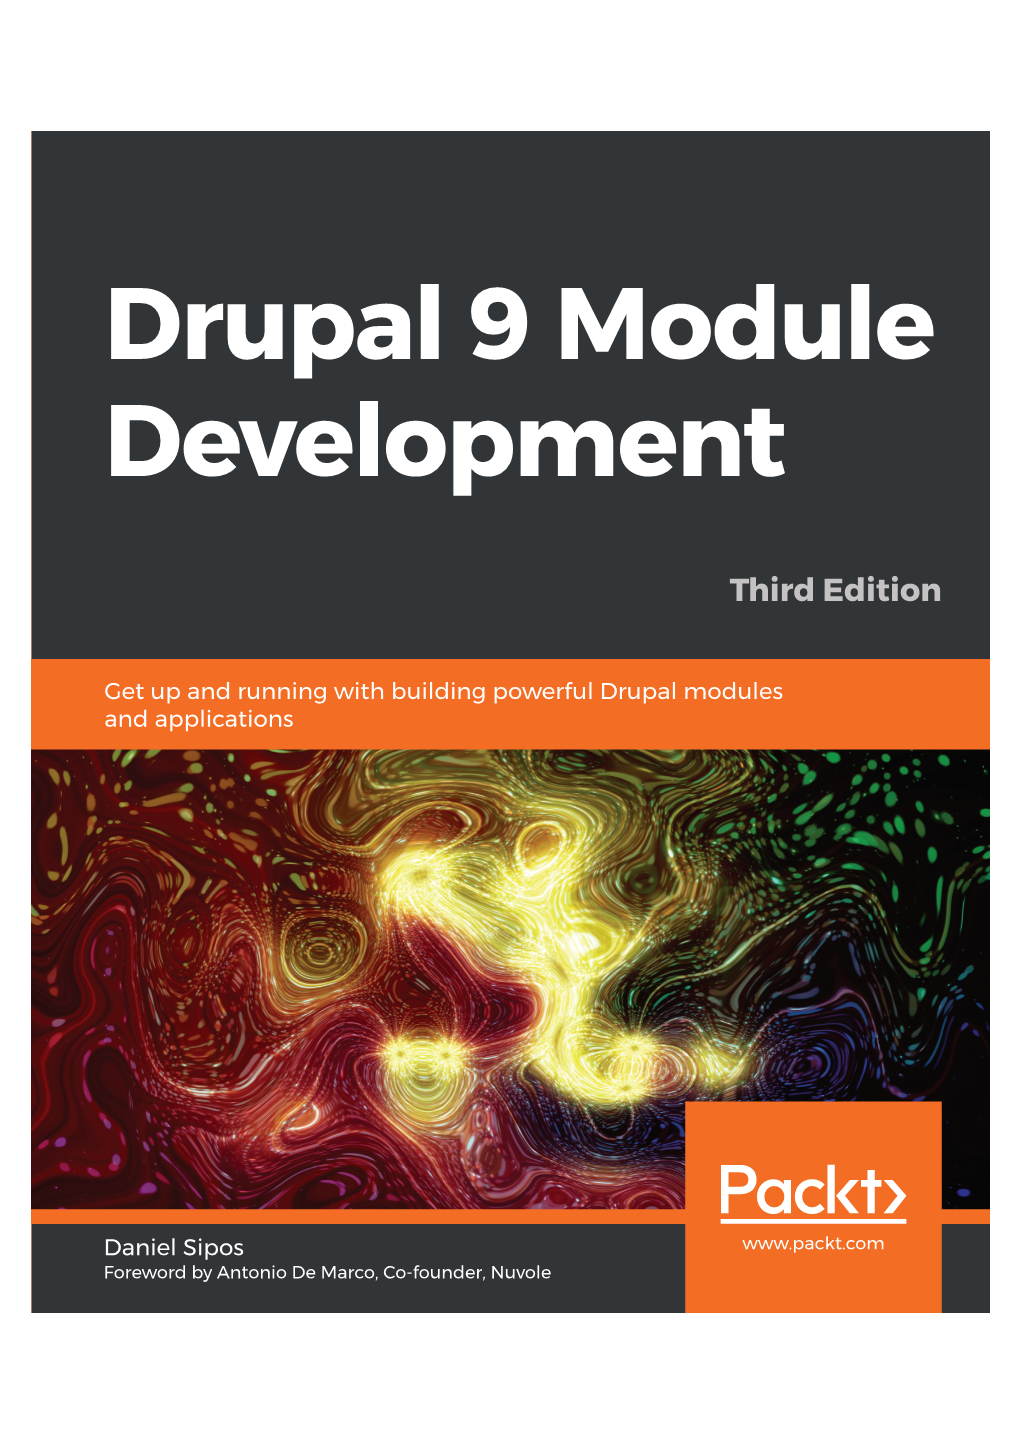 Drupal 9 Module Development Danielsipos Drupal 9 Module Development – Third Edition – Third Edition